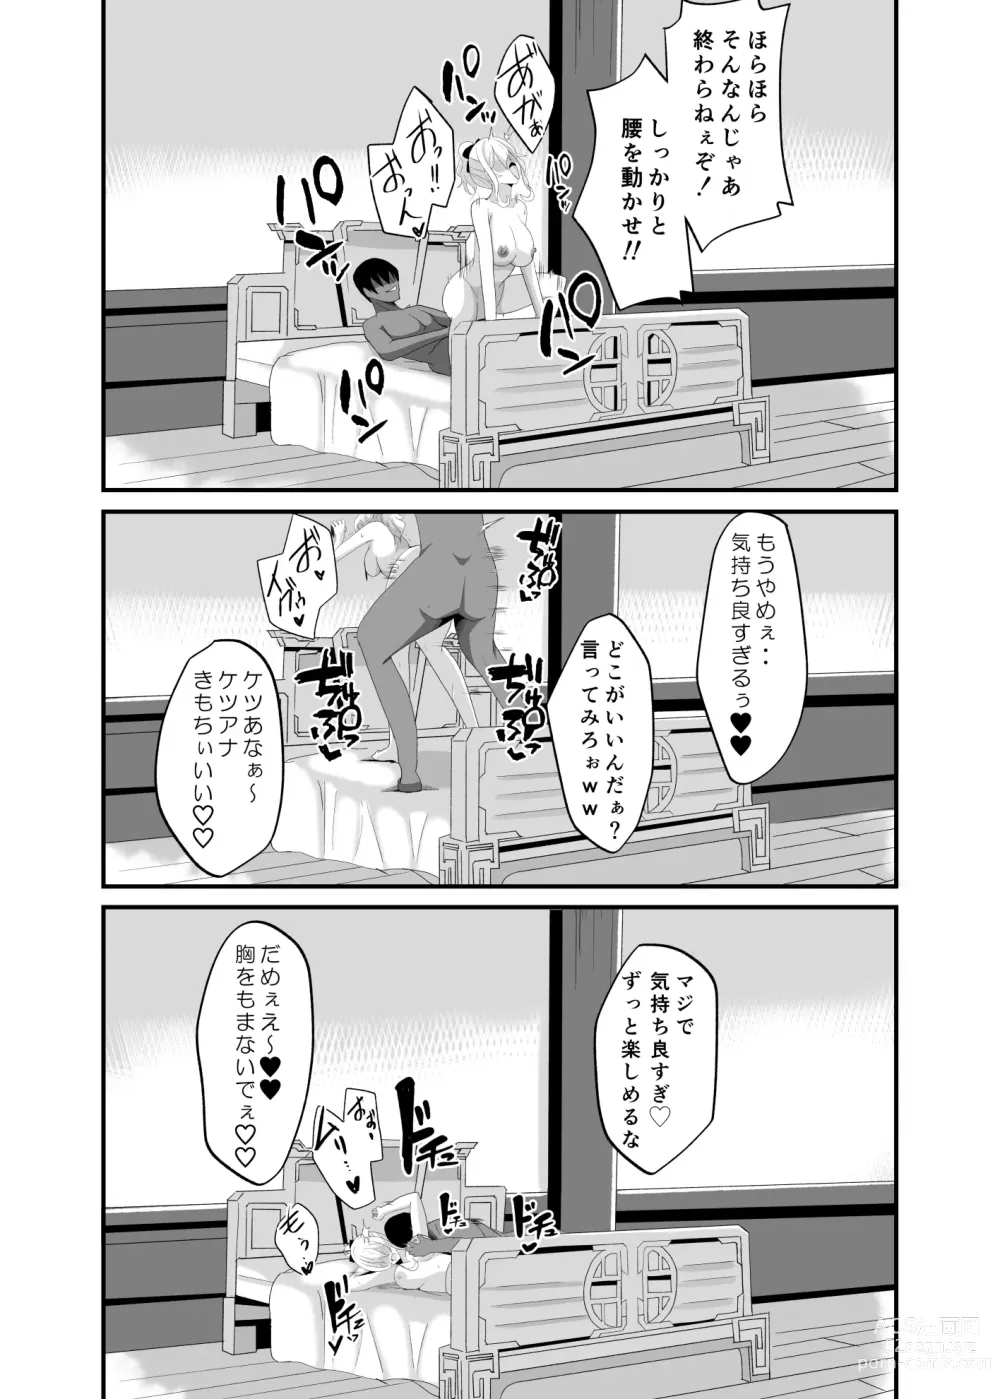 Page 26 of doujinshi Douten Brainwashing 2